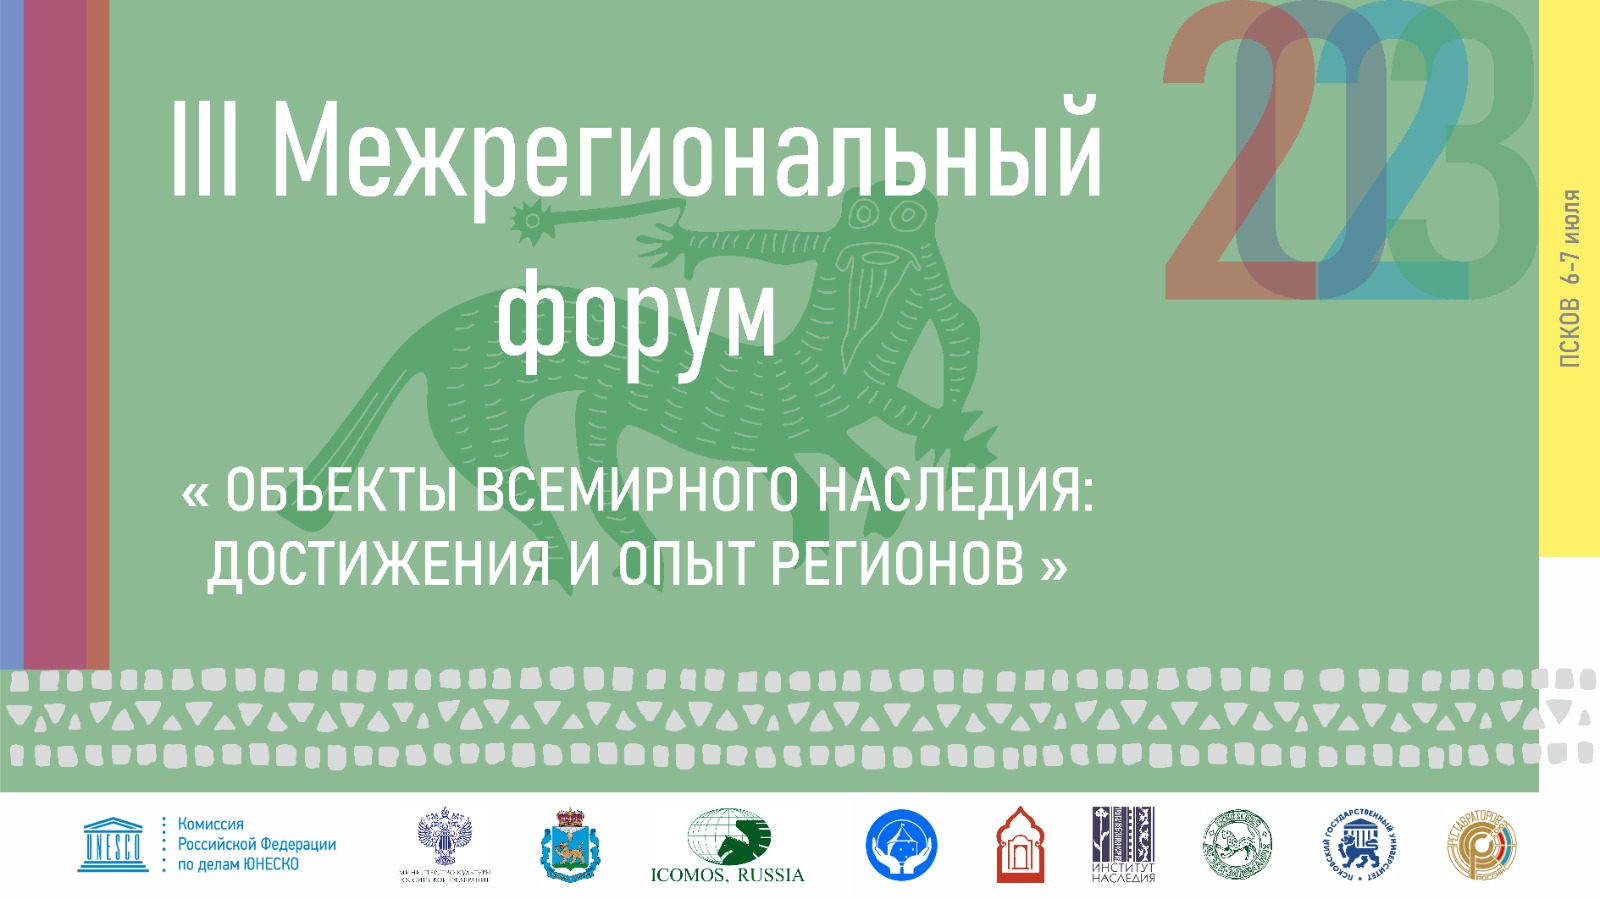 III Межрегиональный форум «Объекты всемирного наследия: достижения и опыт регионов»